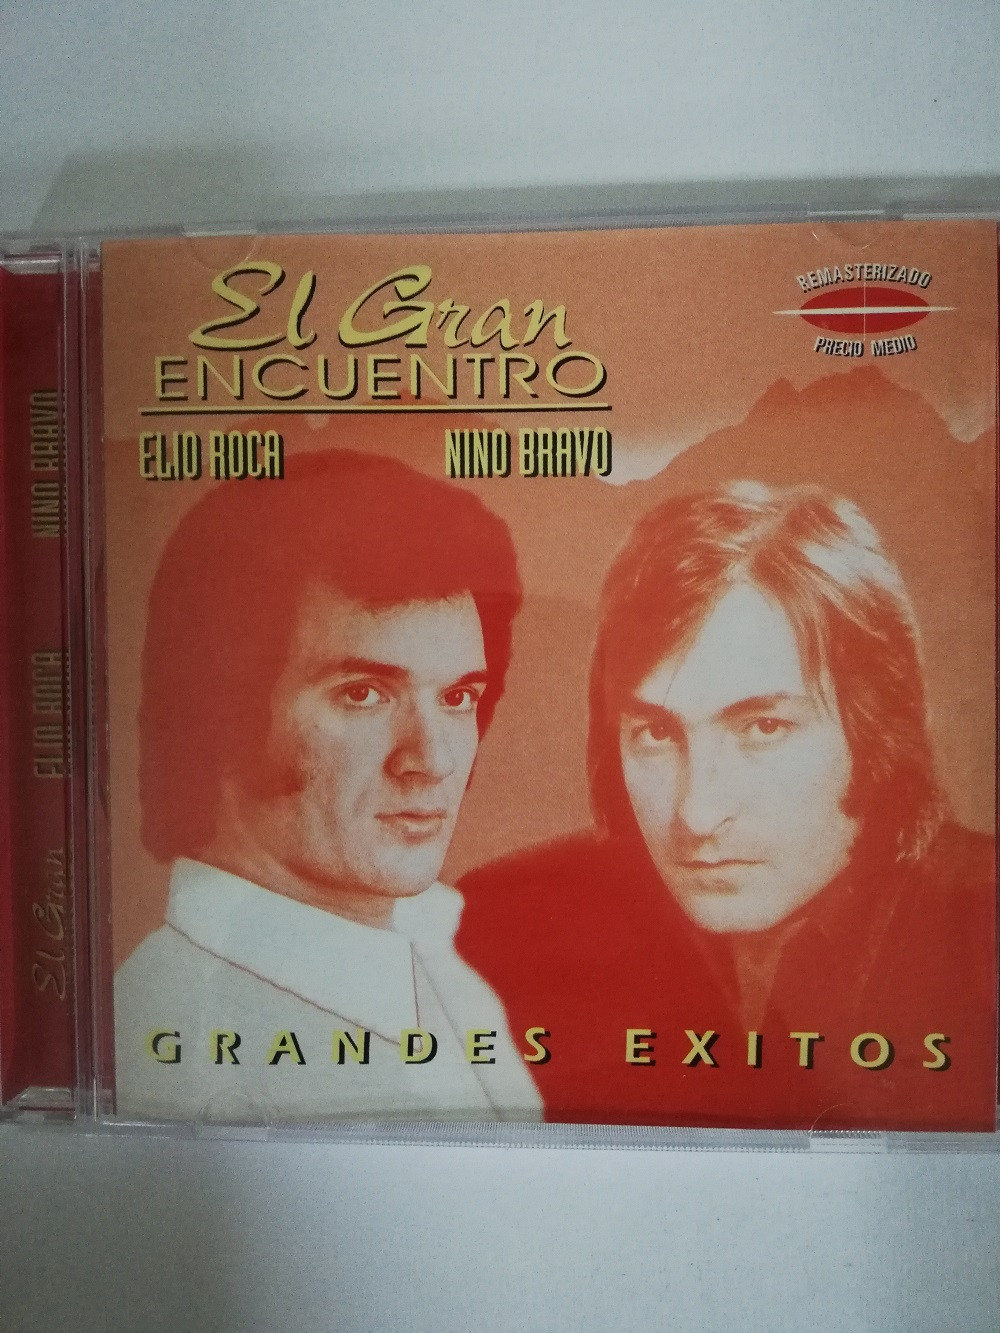 Imagen CD ELIO ROCA & NINO BRAVO - EL GRAN ENCUENTRO 1